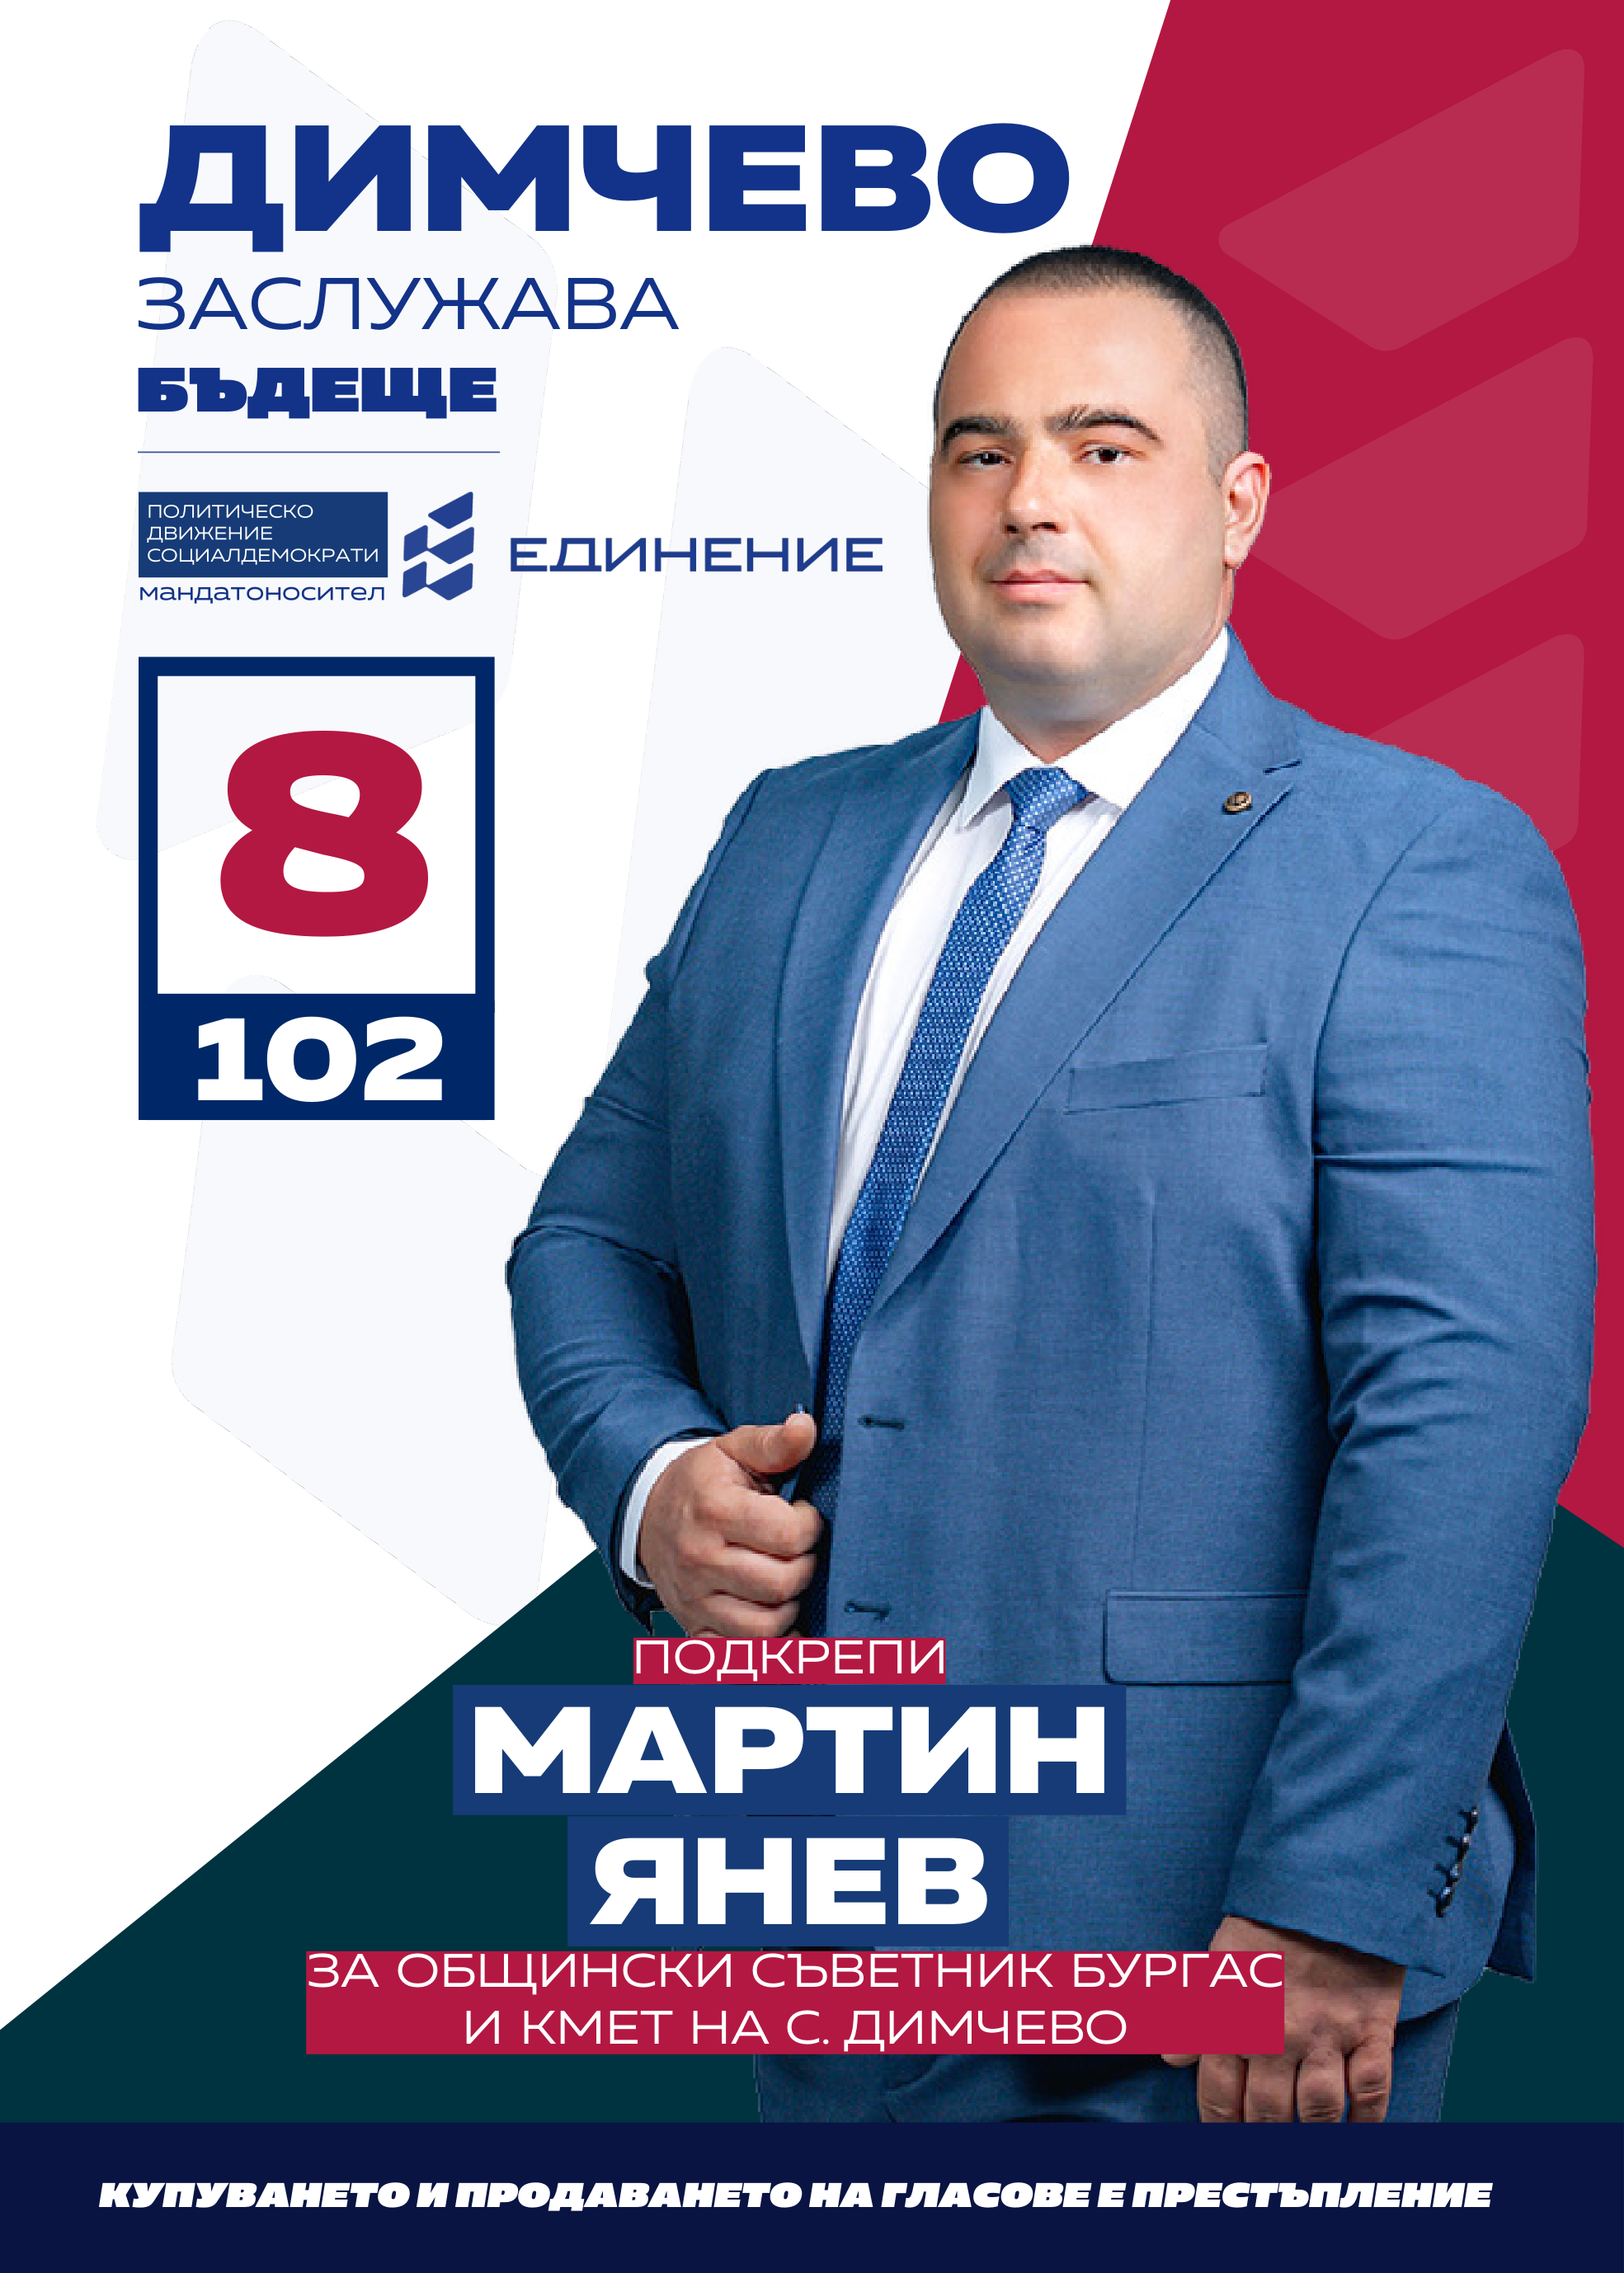 Мартин Янев – управлява собствен бизнес
Кандидатът за общински съветник за